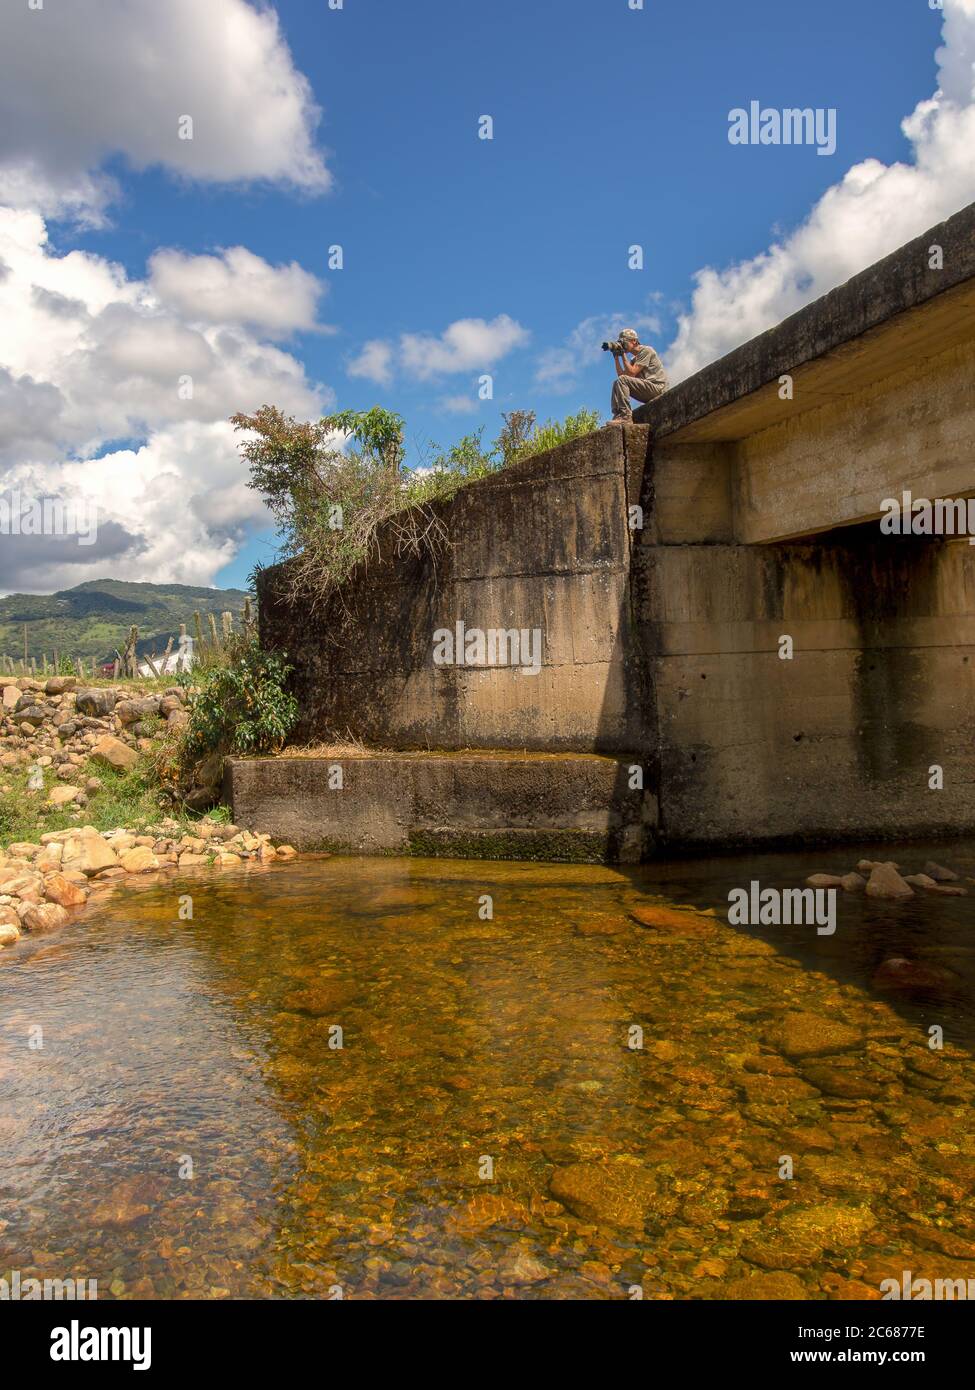 Ein Fotograf, der Vogelbilder vom Rand einer Del Valle-Flussbrücke im kolumbianischen Departement Santander einfängt Stockfoto